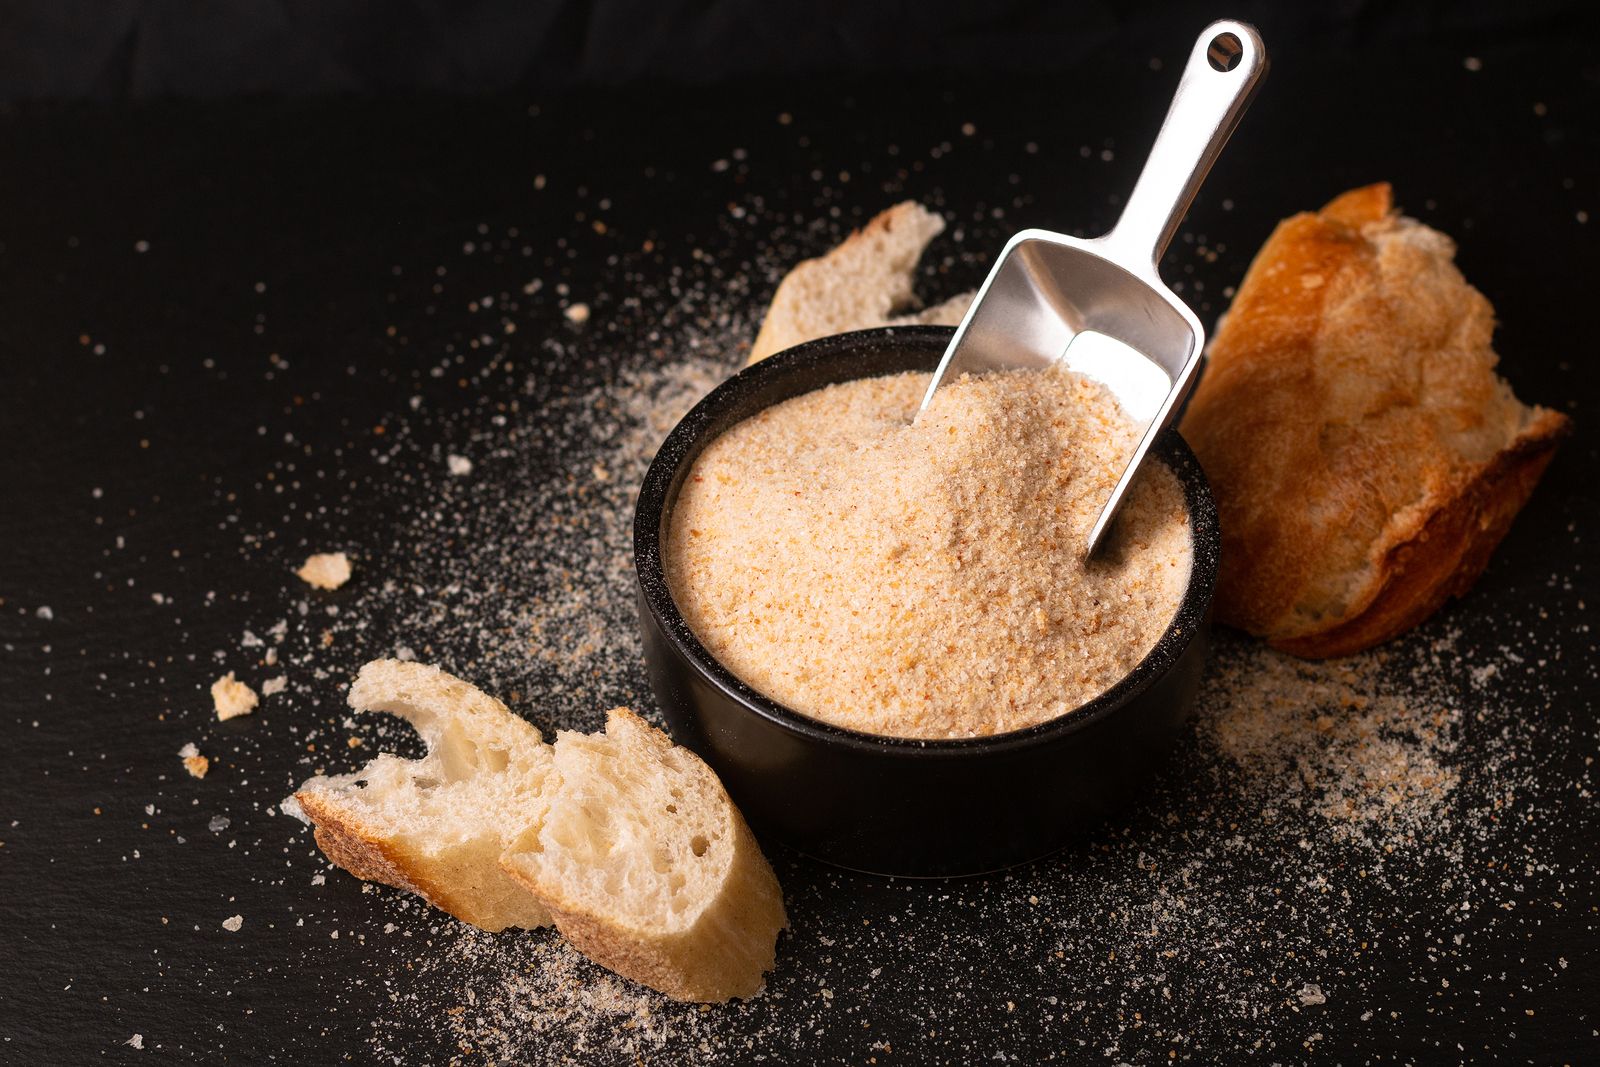 Cuatro ideas para aprovechar el pan duro que te sobra